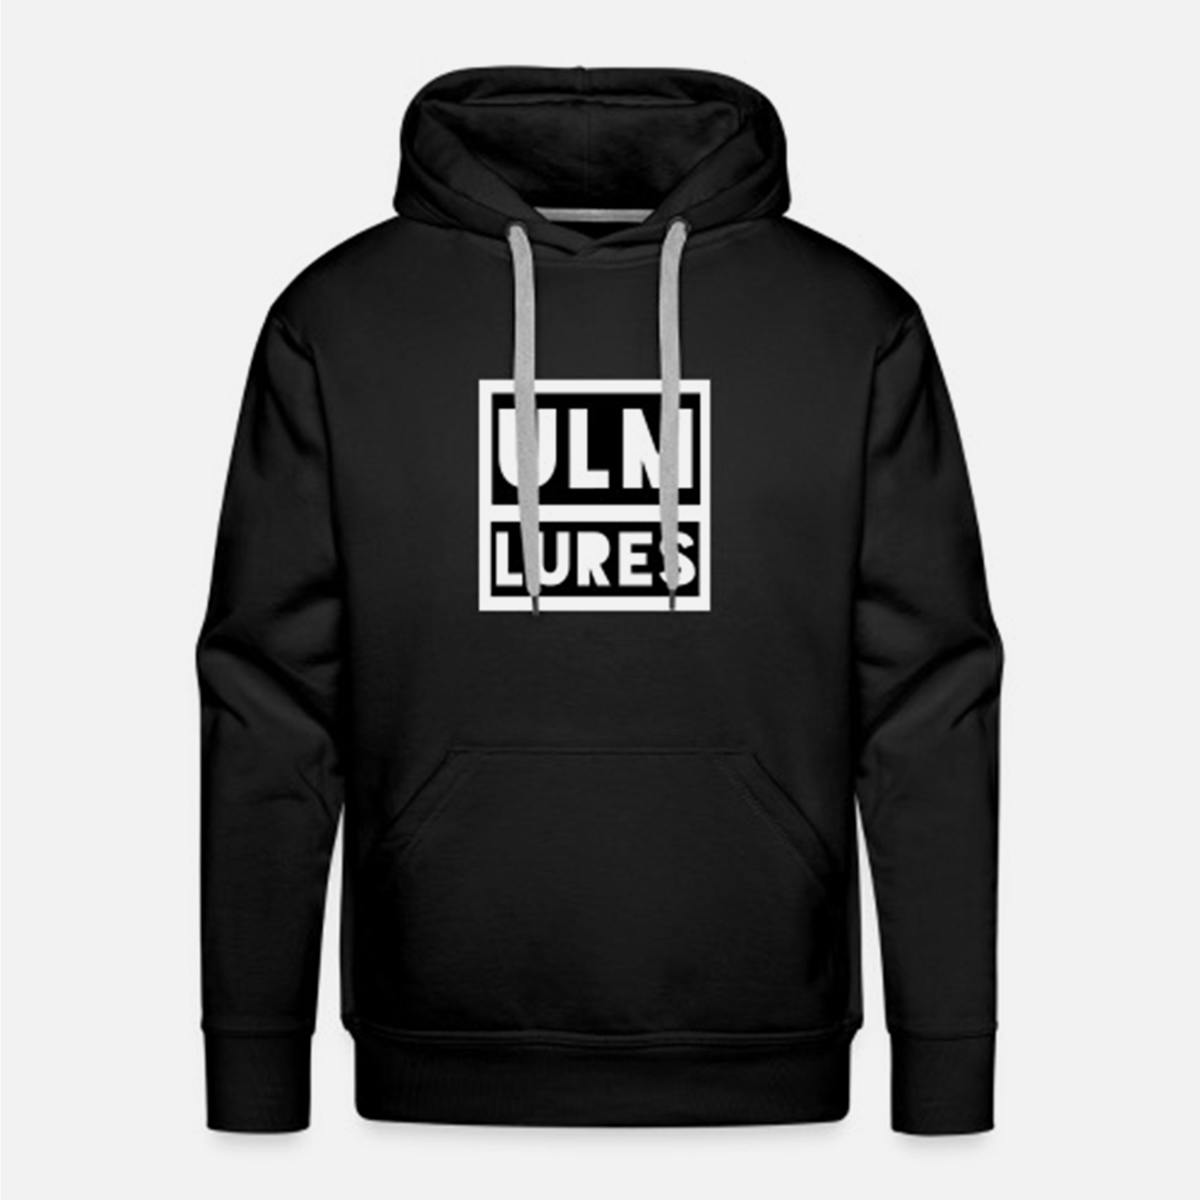 Ulm Lures Logo Hoodie - Black